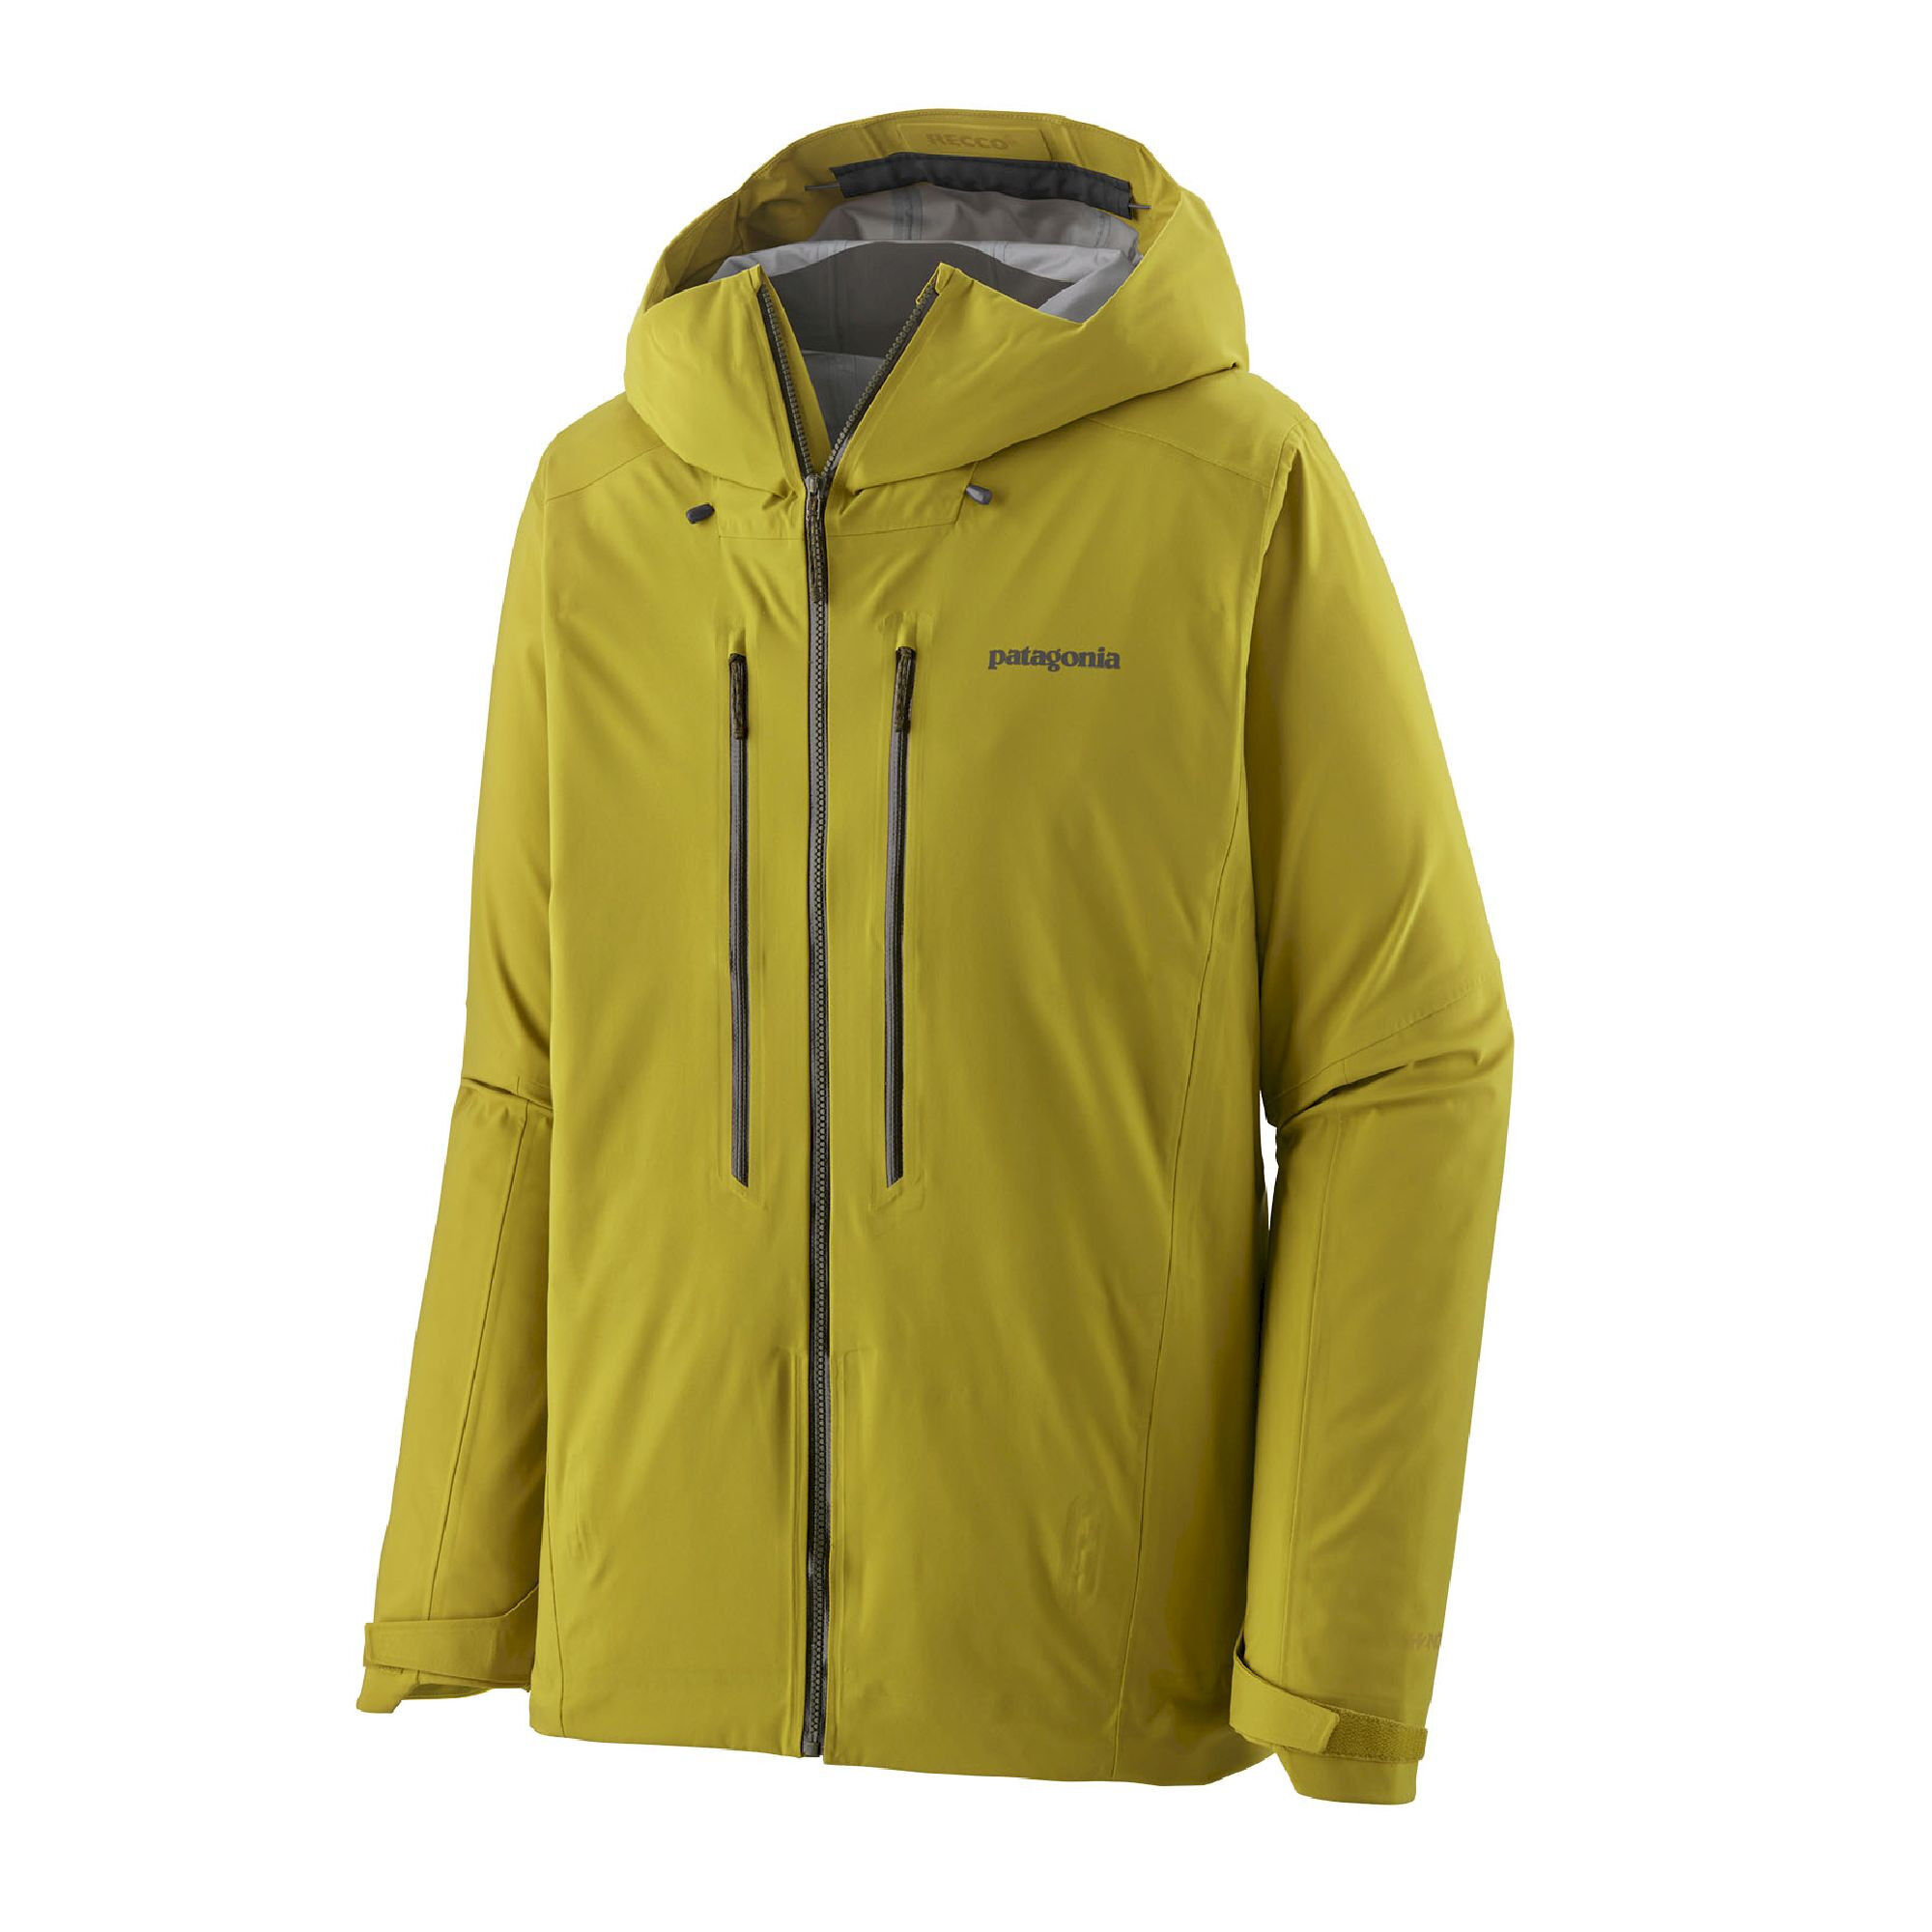 Patagonia Stormstride Jacket - Ski jacket - Men's